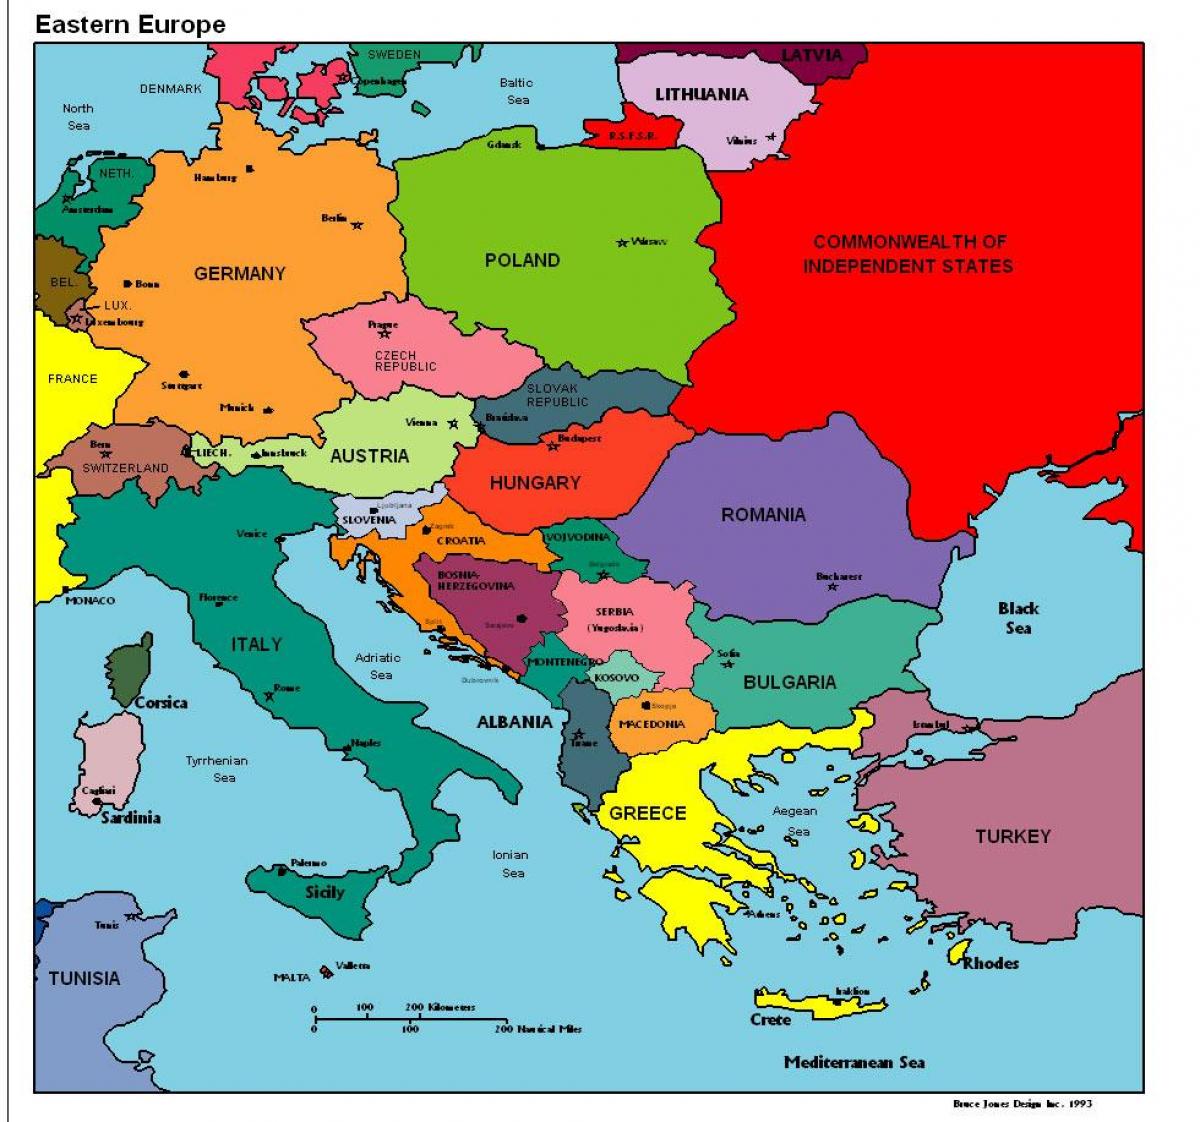 یورپ کا نقشہ دکھا رہا ہے البانیہ